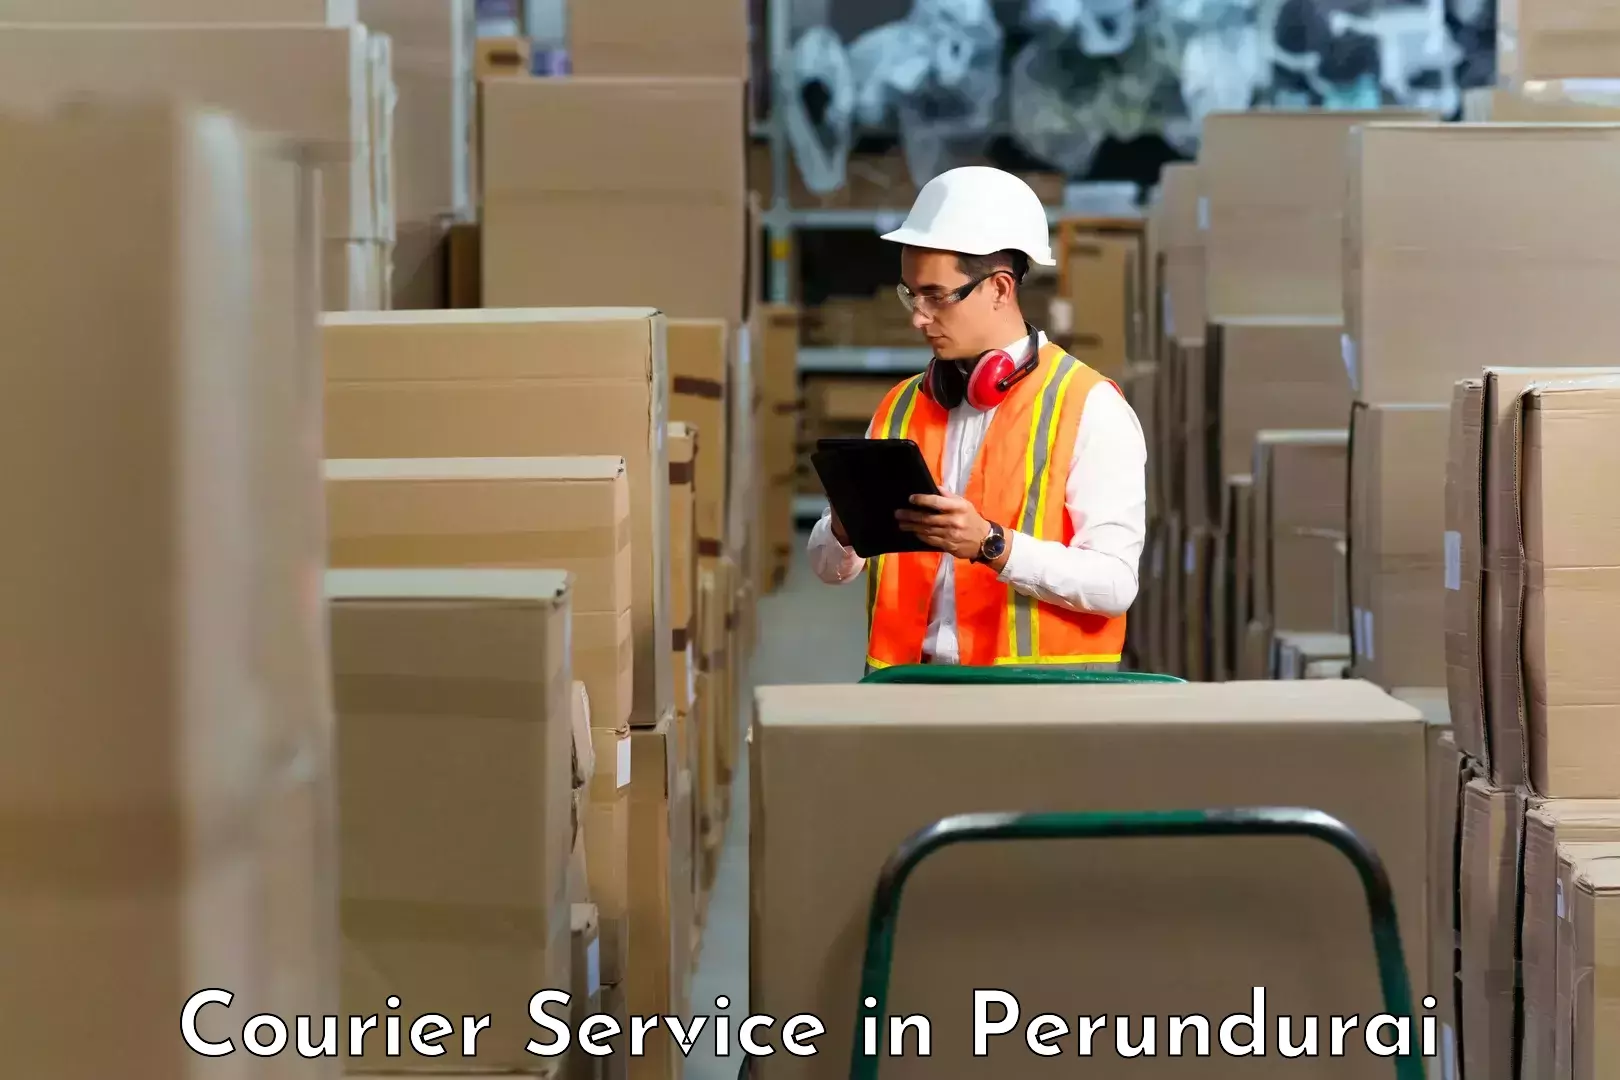 Cash on delivery service in Perundurai